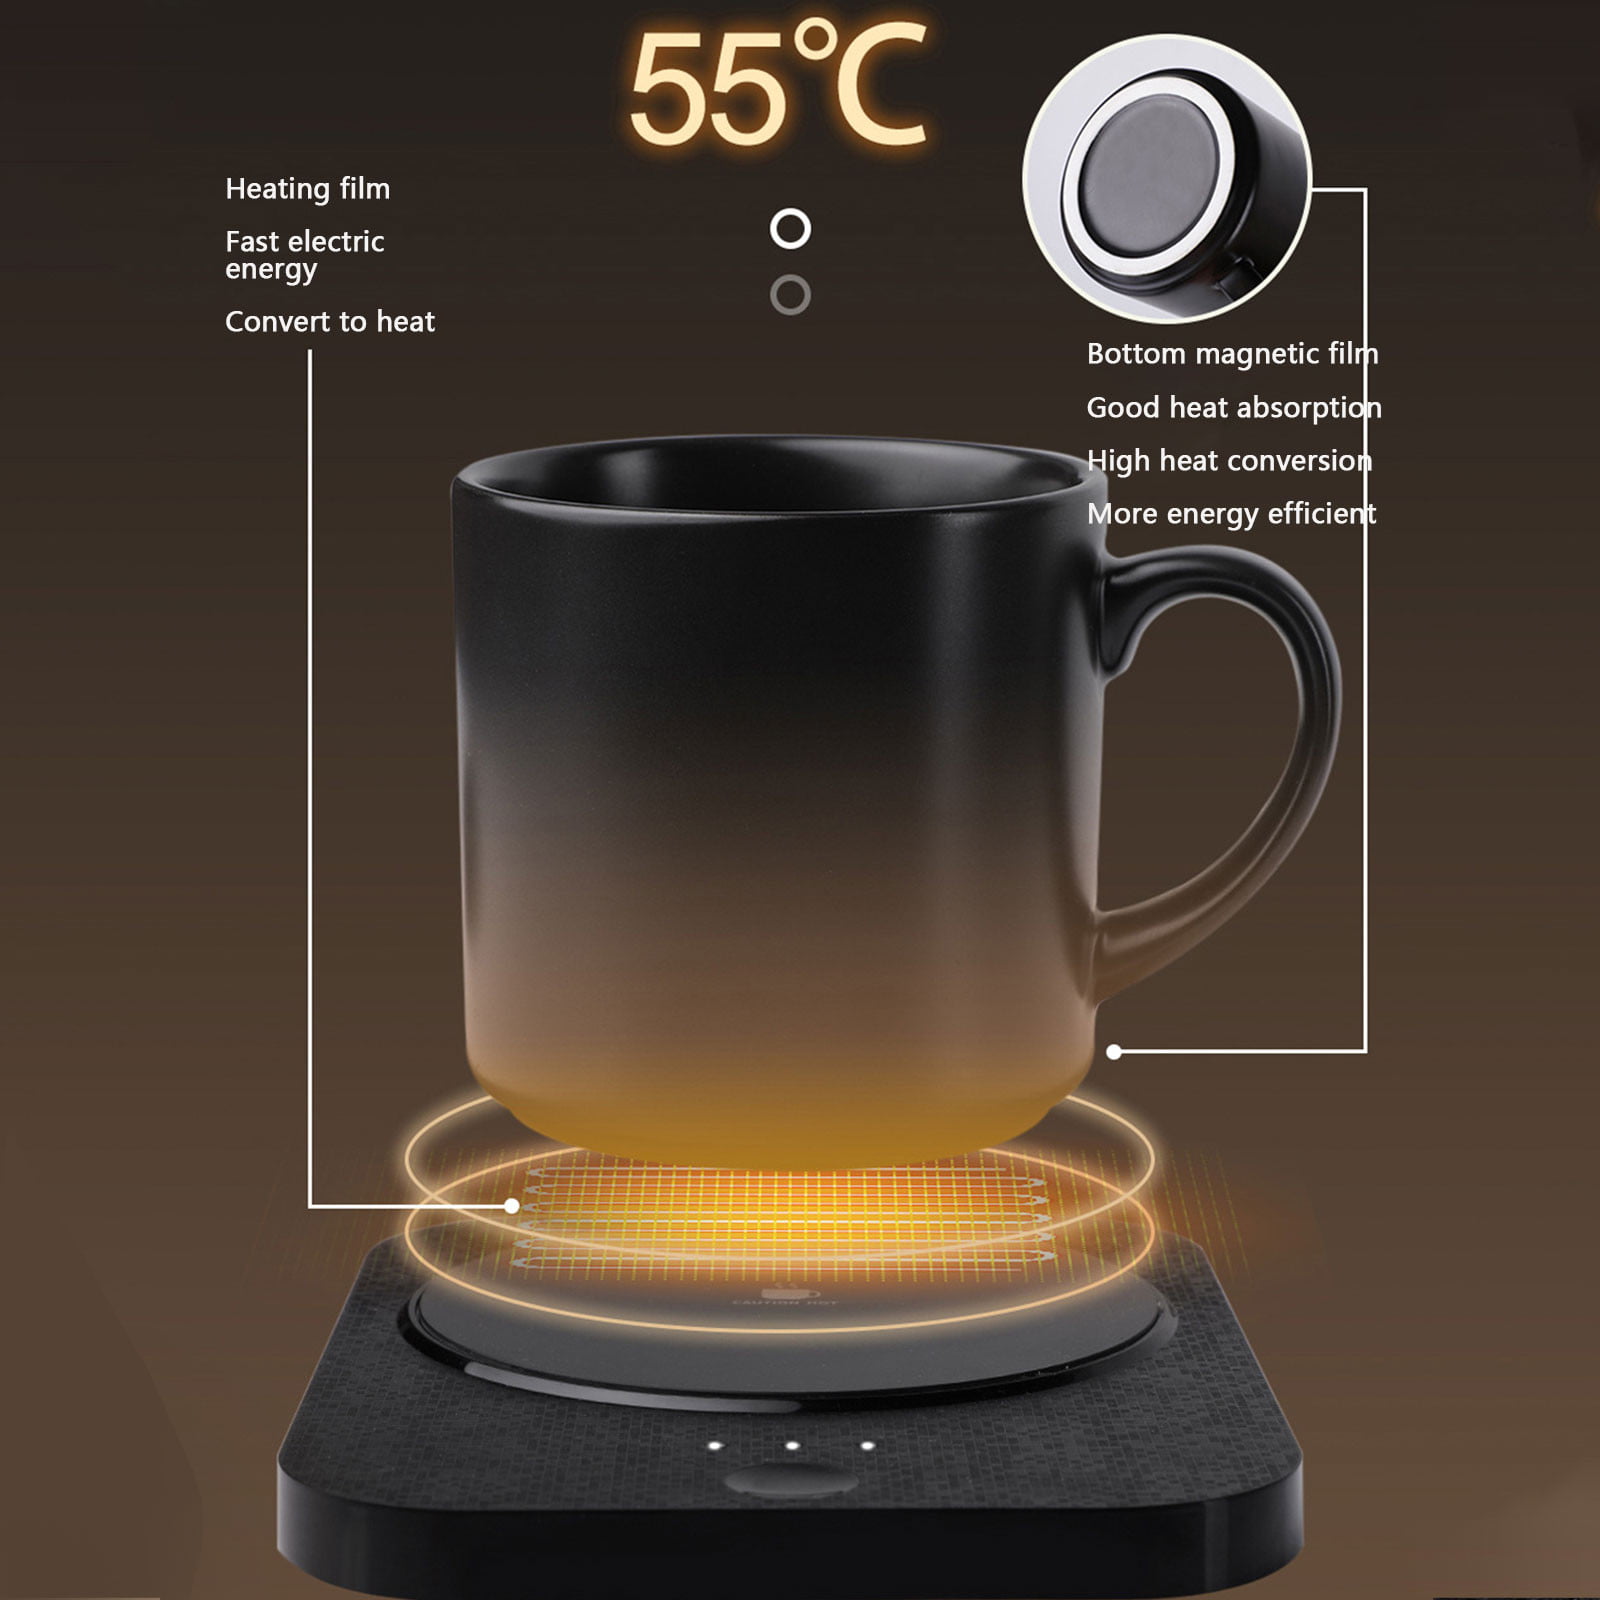 Tiitstoy Coffee Mug Warmer & Mug Set,Self Heating Mug with